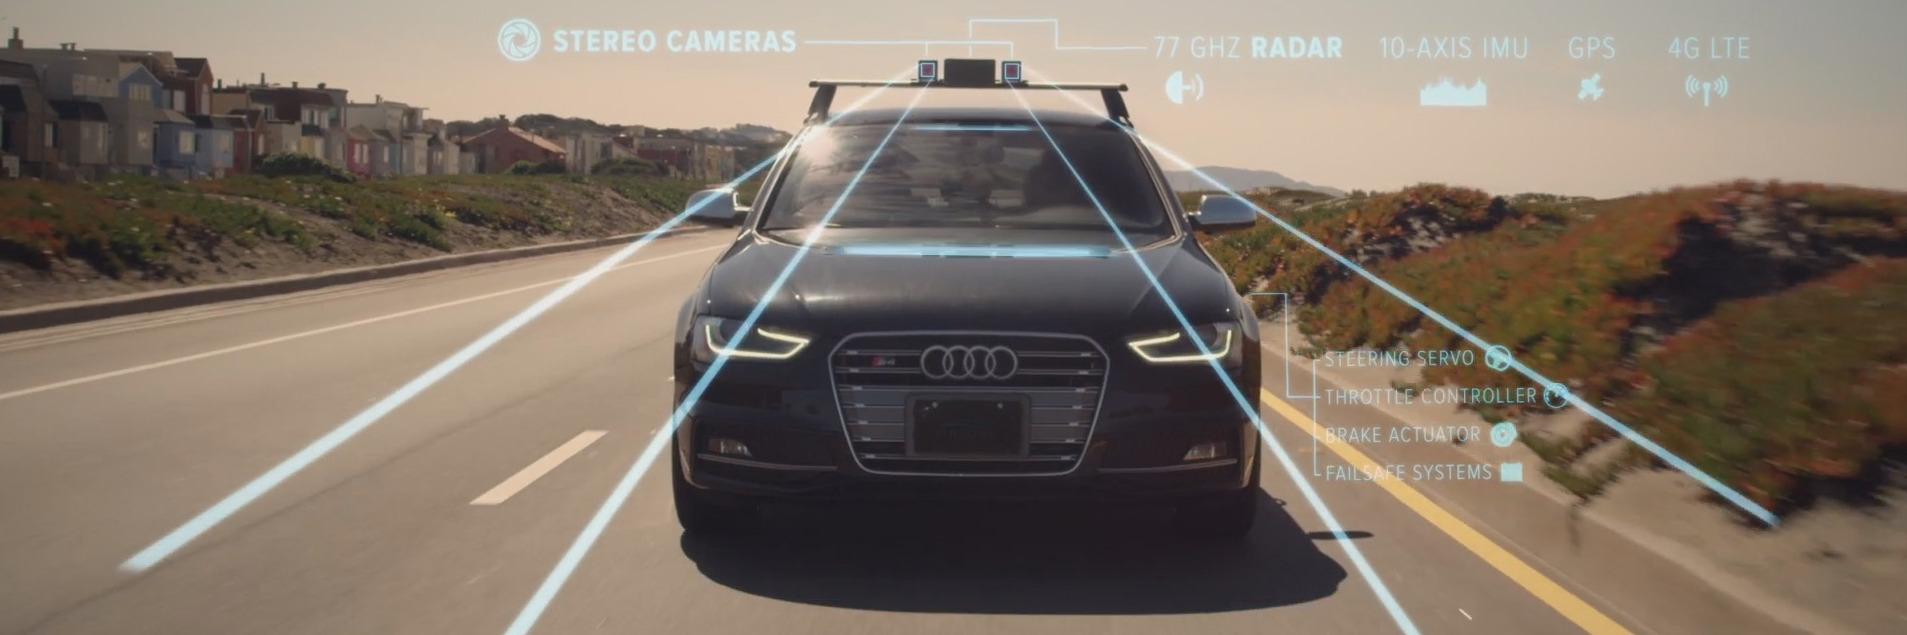 Kameraer, radar og ultrasonisk utstyr gjør at bilen kan «se» mer enn deg.Foto: Cruise